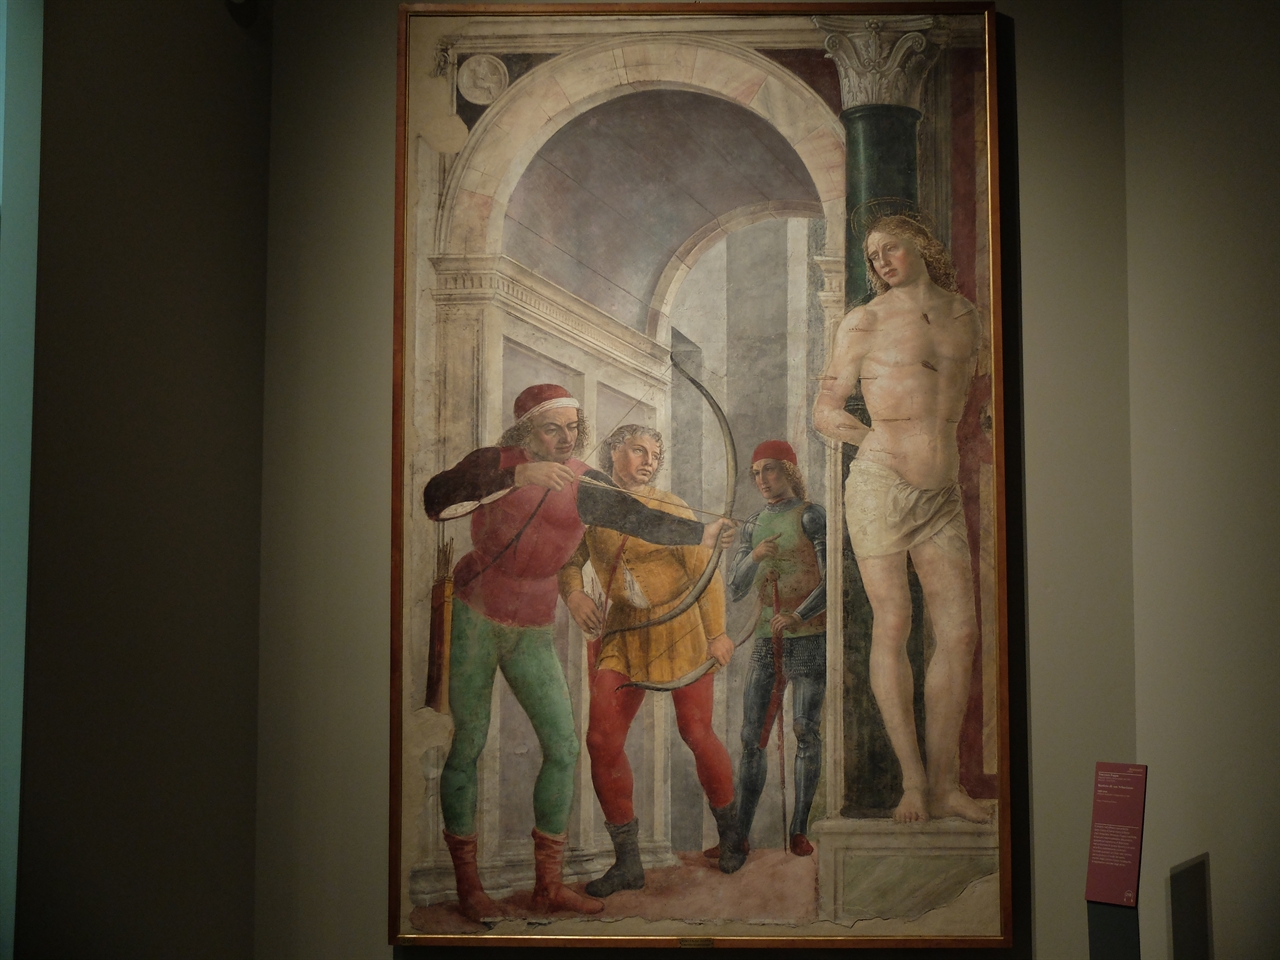 빈센초 다 포파, '성 세바스티아노의 순교', 밀라노 브레라 미술관. 브라만테 특별전에 전시된 이 작품은 화살을 맞고 순교한 성 세바스티아노의 모습을 담고 있습니다. 